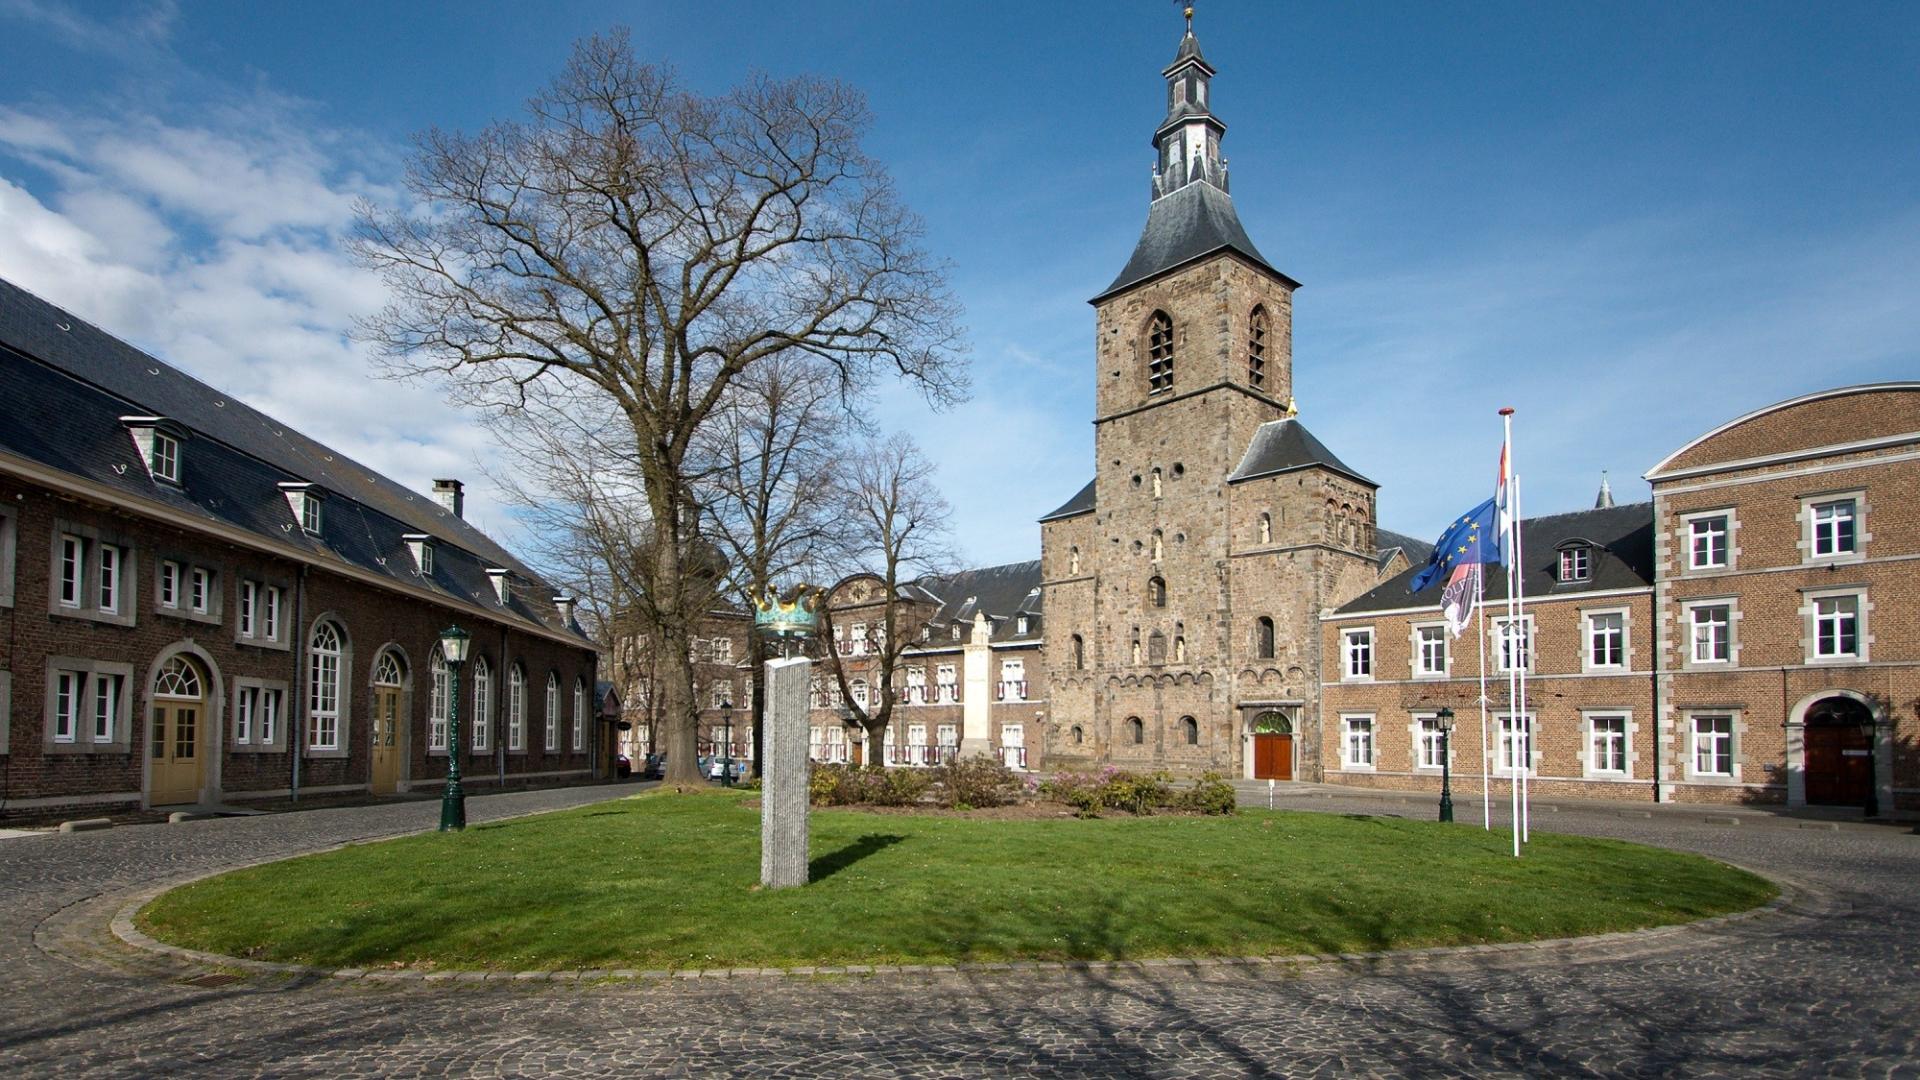 Dagaanbieding - 3 of 4 dagen in een prachtig abdijhotel in Zuid-Limburg incl. 3-gangendiner en meer! dagelijkse koopjes